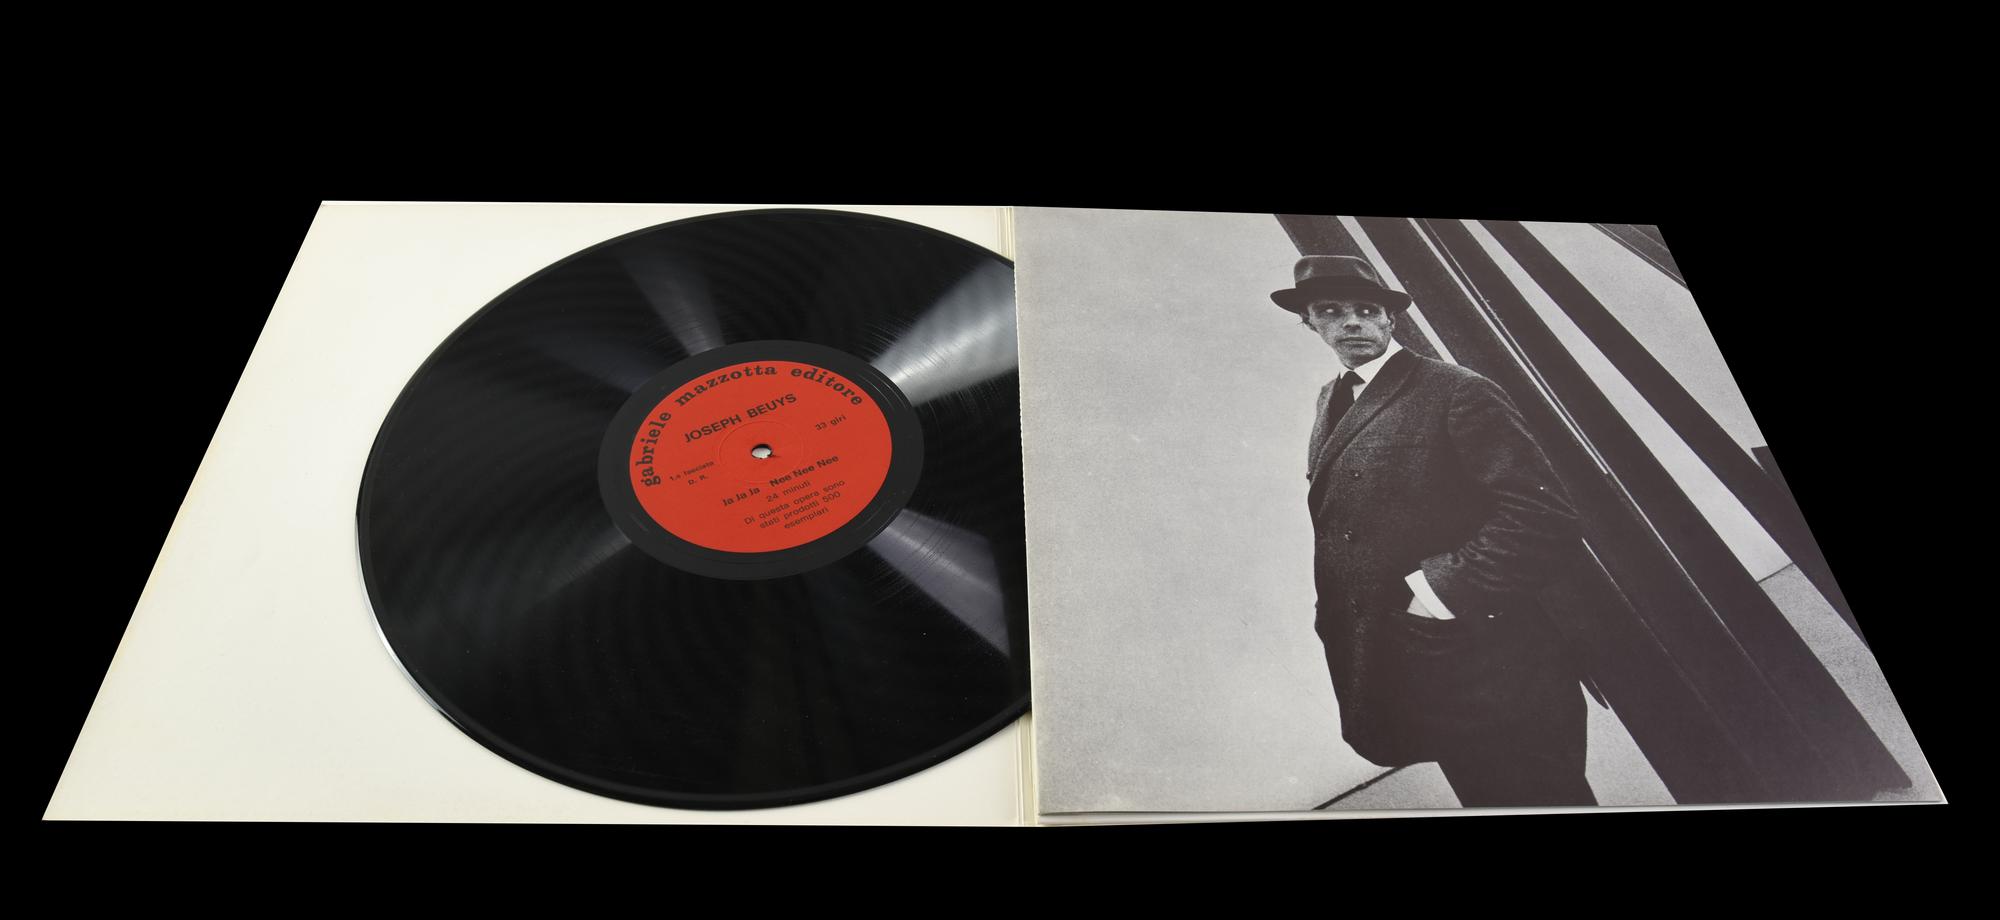 Joseph Beuys (1921 - 1986) JA JA JA NEE NEE NEE disco d'artista in vinile...